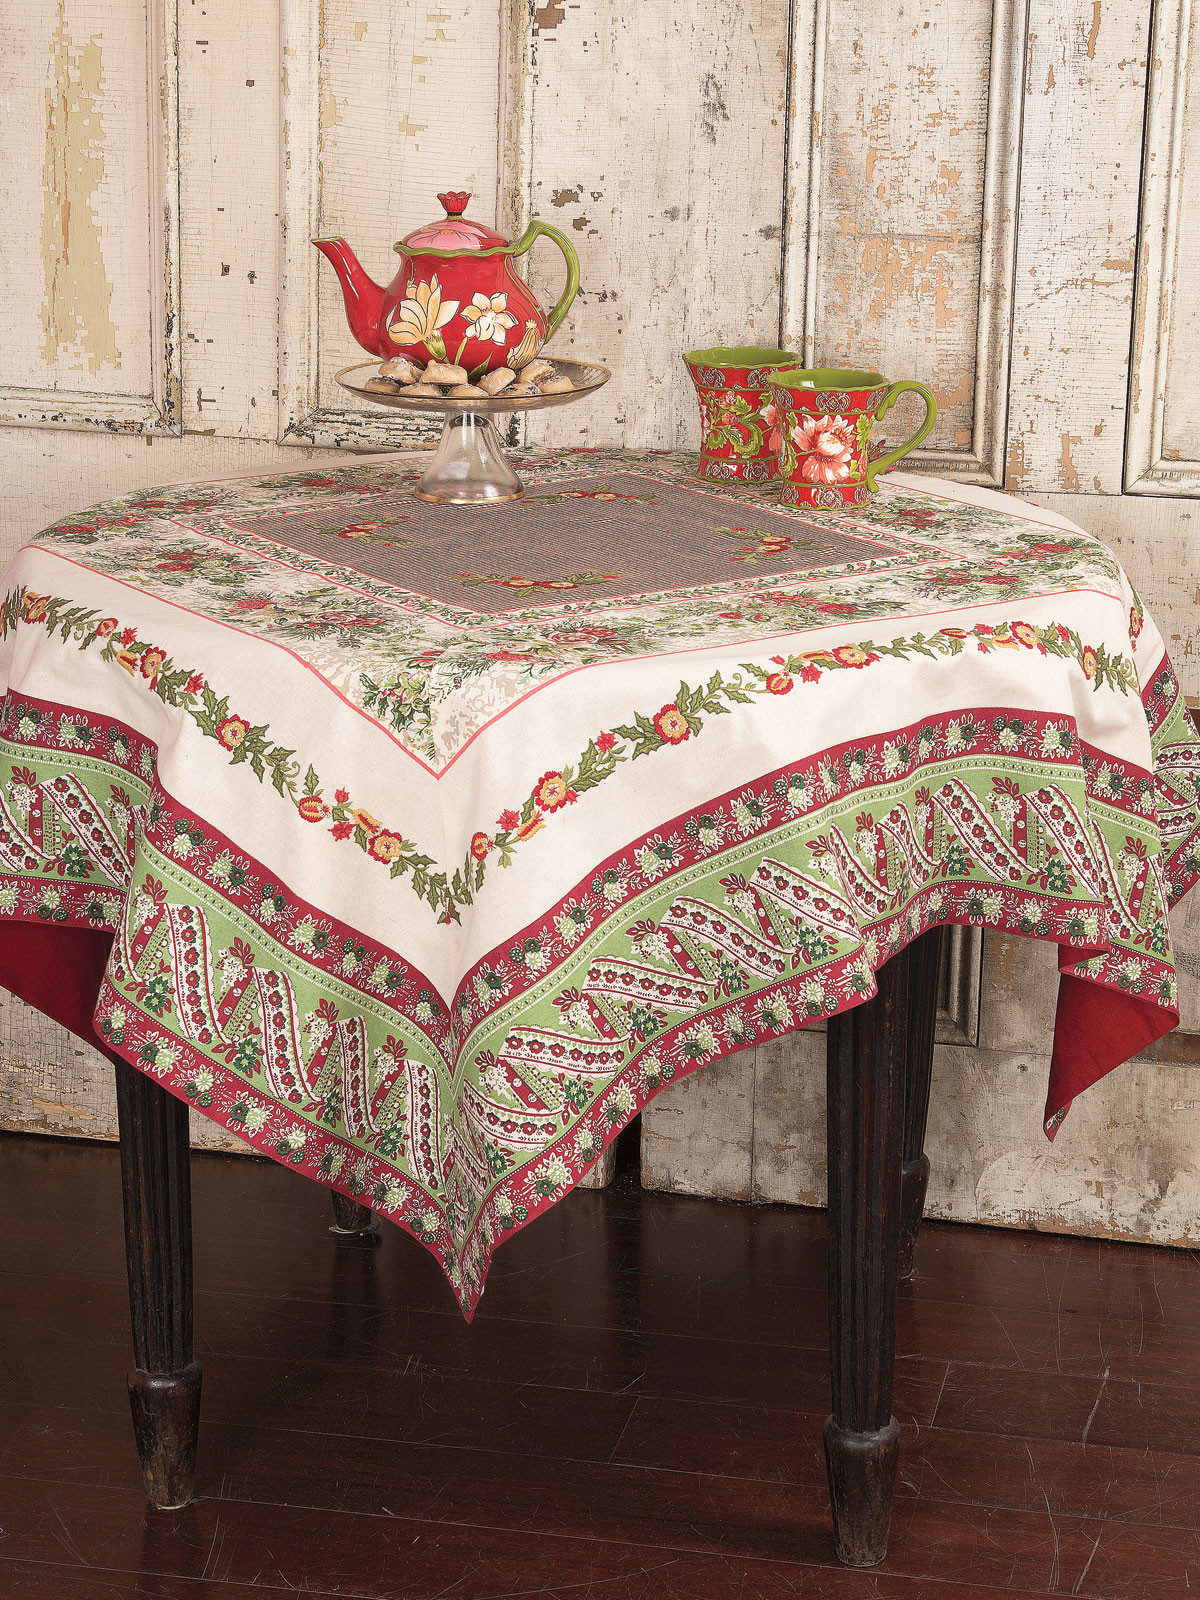 Christmas Table Cloths
 Joyful Patchwork Tablecloth